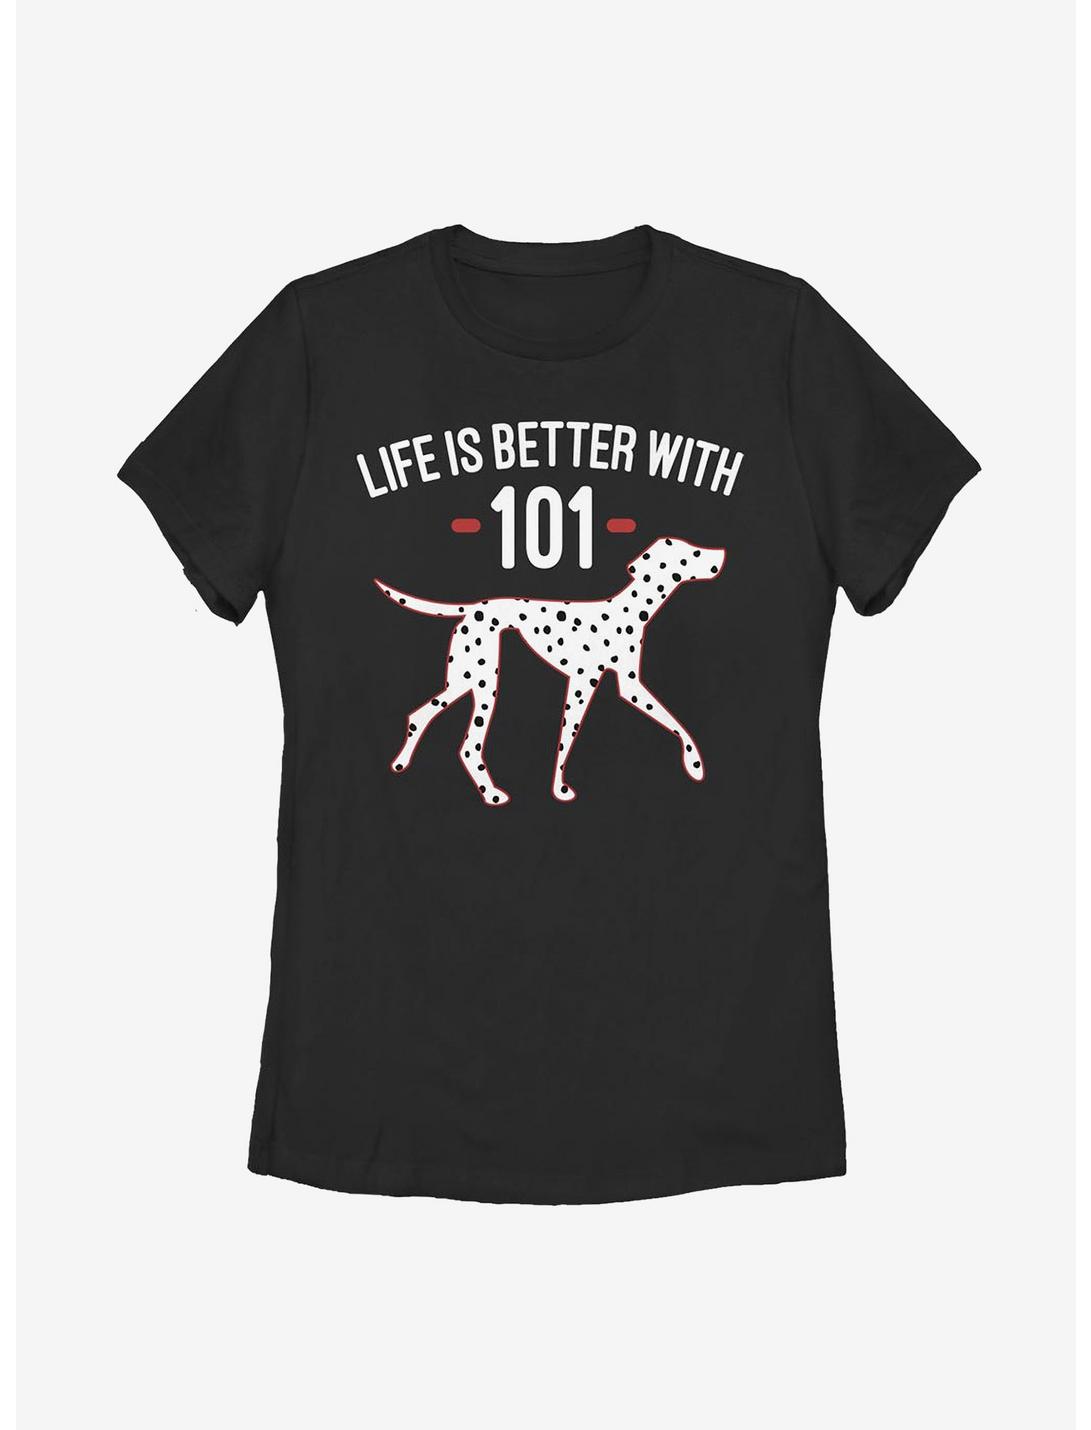 Disney 101 Dalmatians Better With Womens T-Shirt, BLACK, hi-res